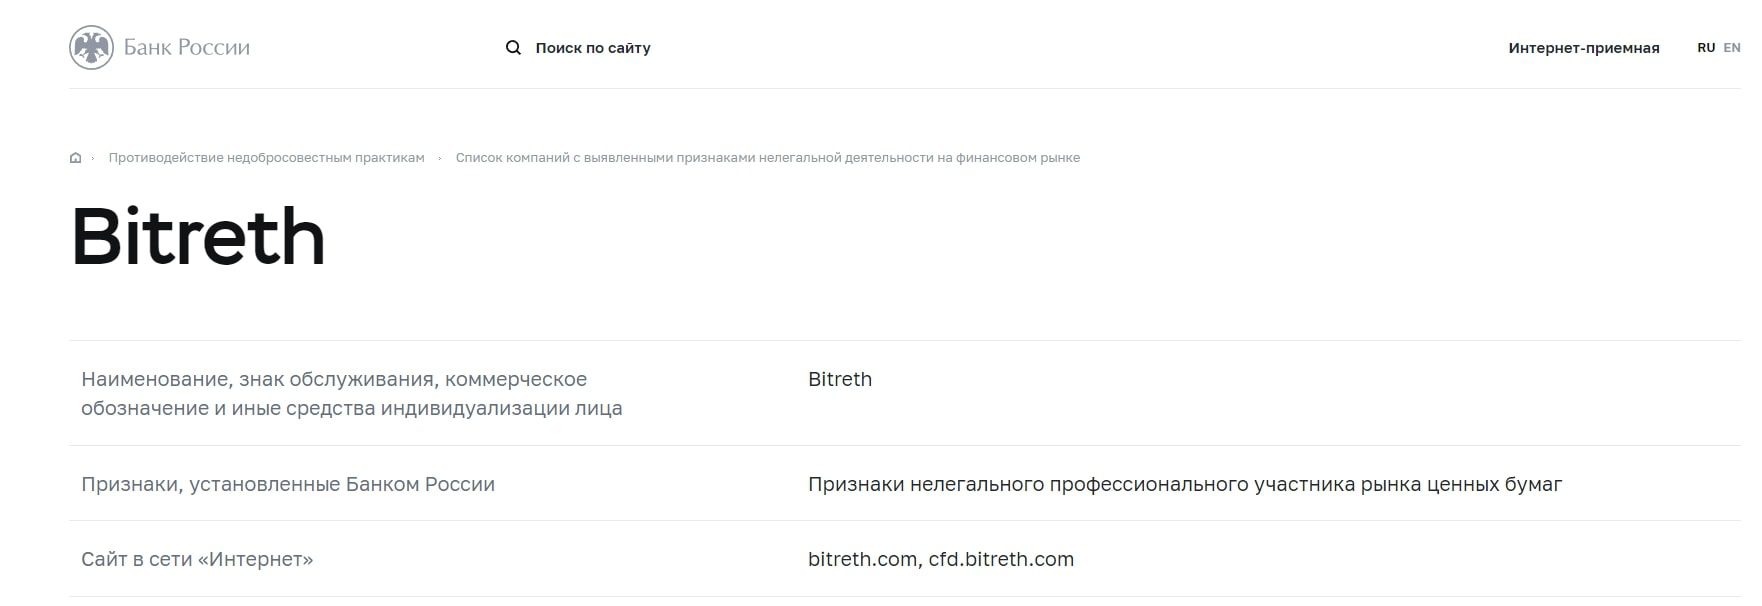 Bitreth биржа в реестре ЦБ РФ